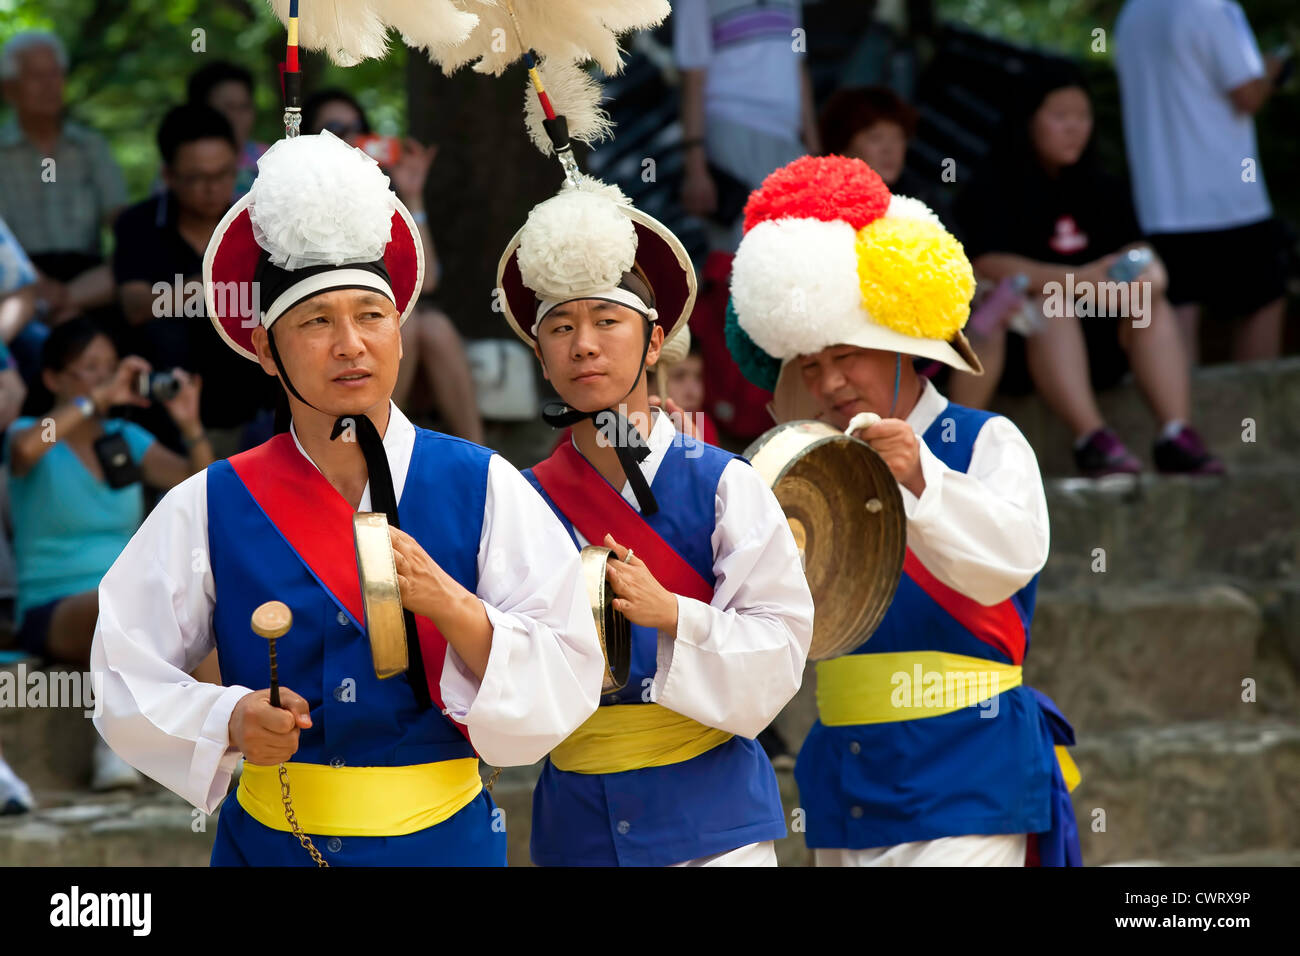 L'un des agriculteurs danseurs mène le groupe dans la danse agriculteurs cérémonie au village folklorique coréen à Yongin, Corée. Banque D'Images